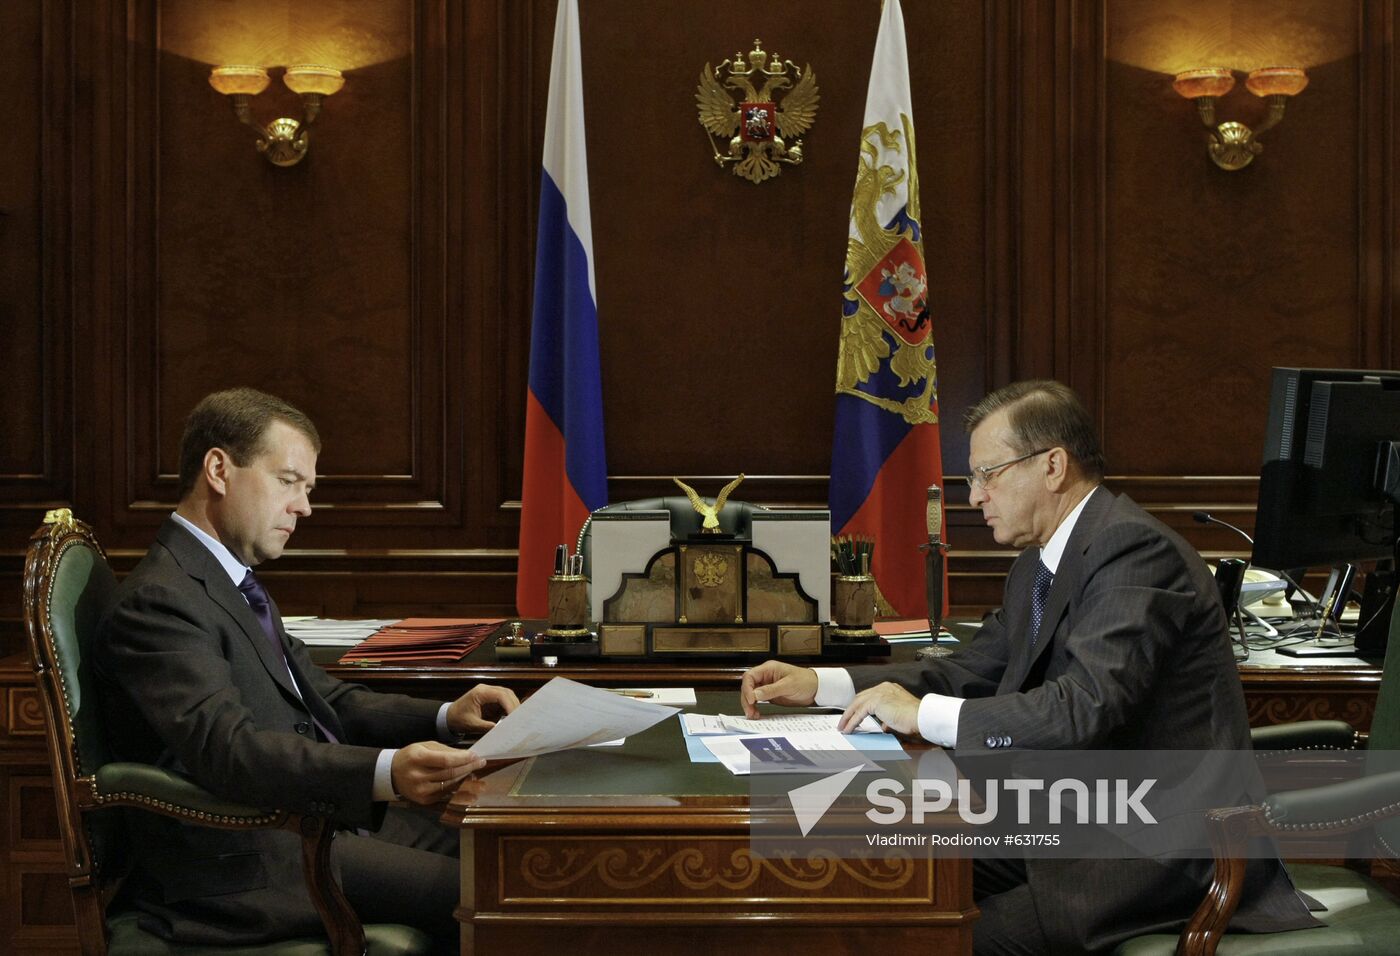 Dmitry Medvedev, Viktor Zubkov